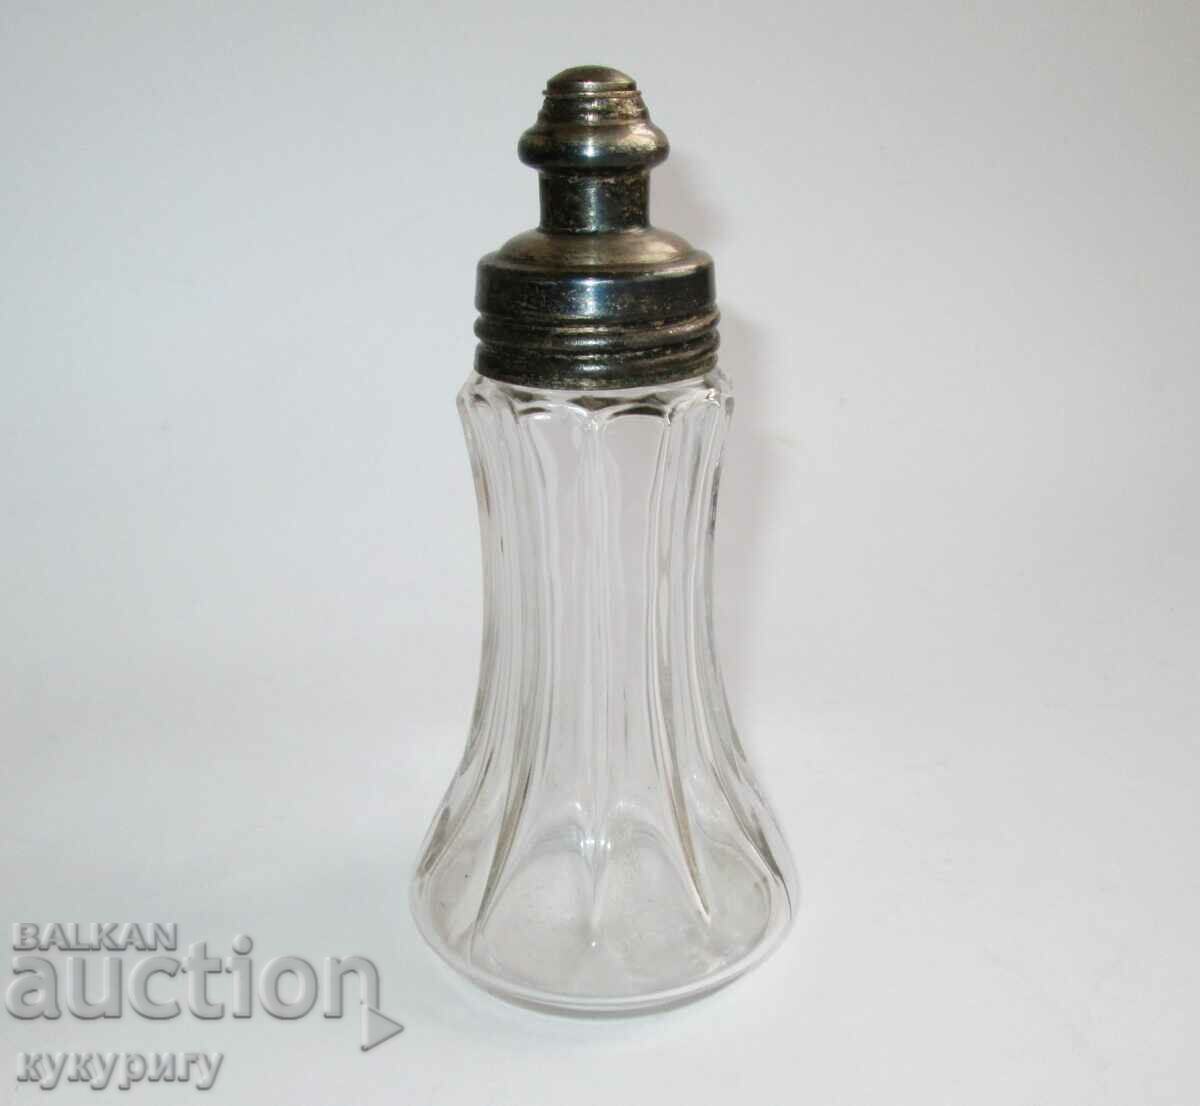 Old vintage perfume or cologne bottle with dispenser